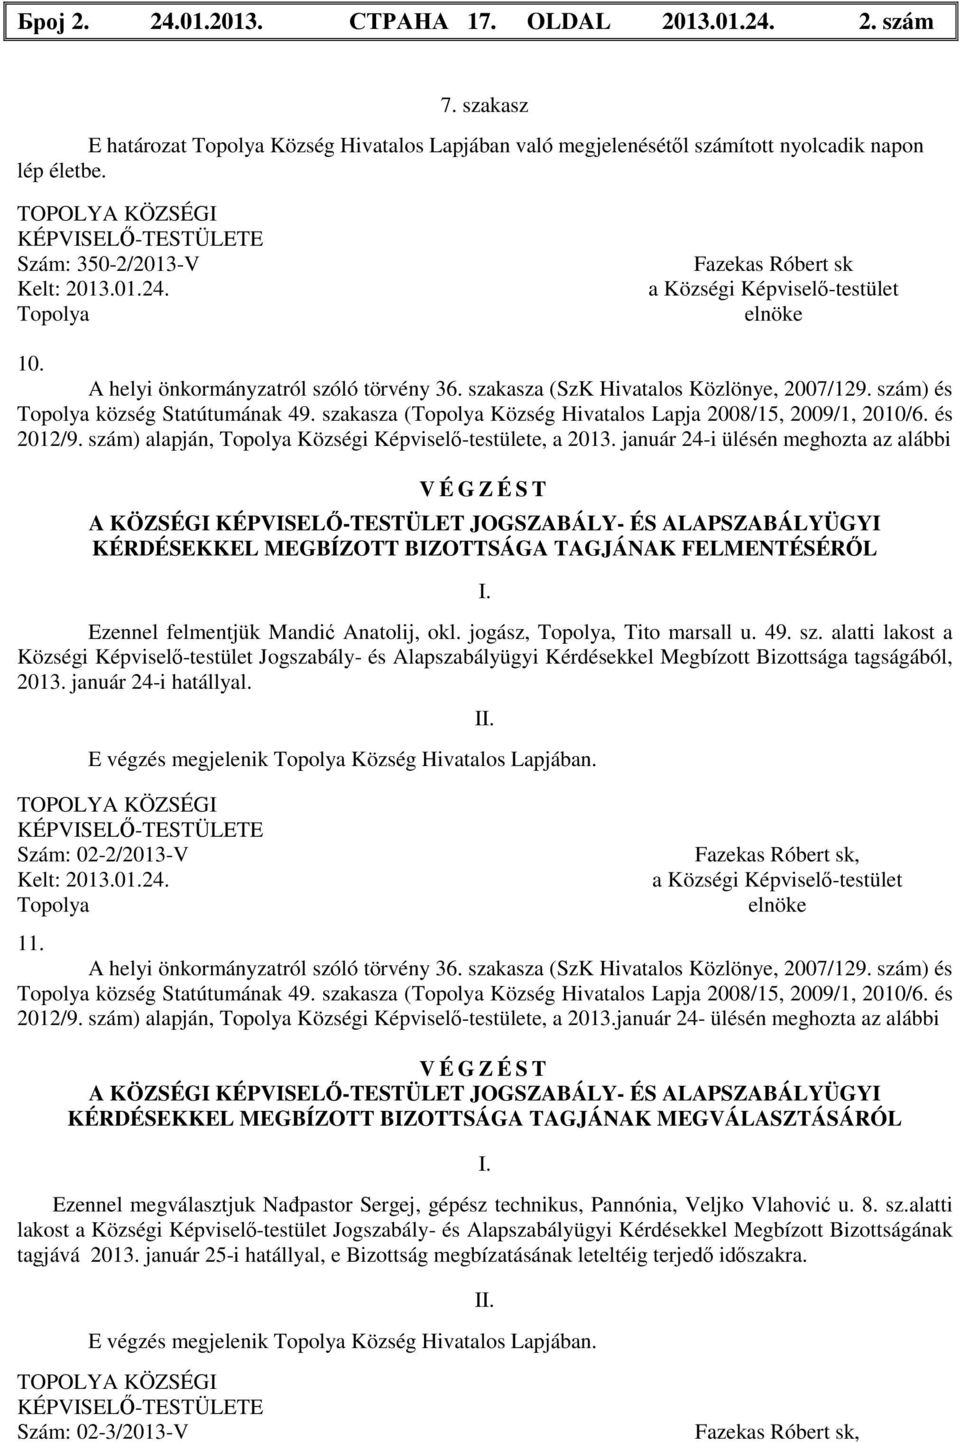 szakasza (SzK Hivatalos Közlönye, 2007/129. szám) és Topolya község Statútumának 49. szakasza (Topolya Község Hivatalos Lapja 2008/15, 2009/1, 2010/6. és 2012/9.